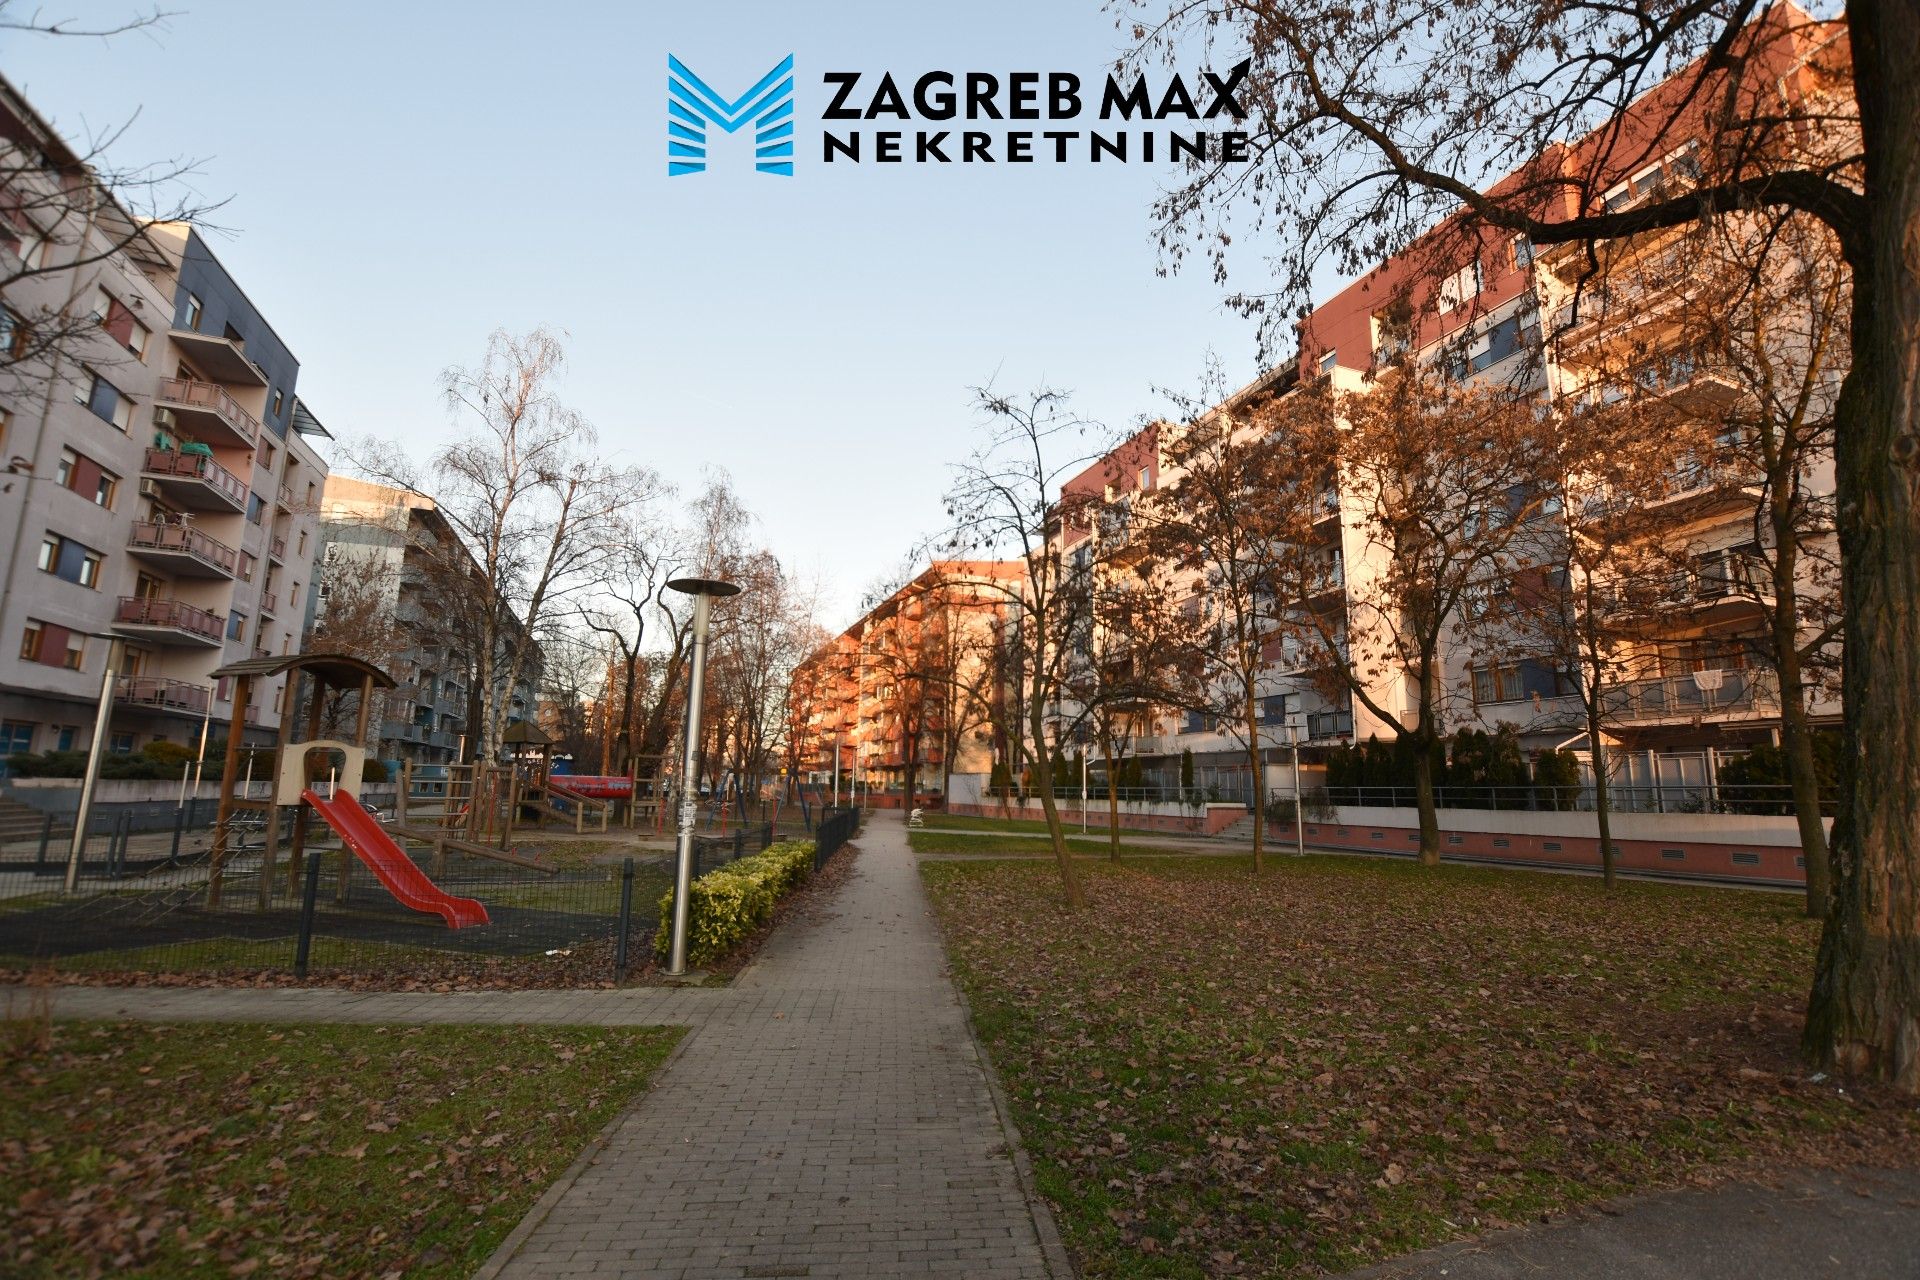 Zagreb - ŠPANSKO – Ugodan 3soban stan 57 m2, terasa 18m2, 3 spavaće sobe, prizemlje, odlična lokacija